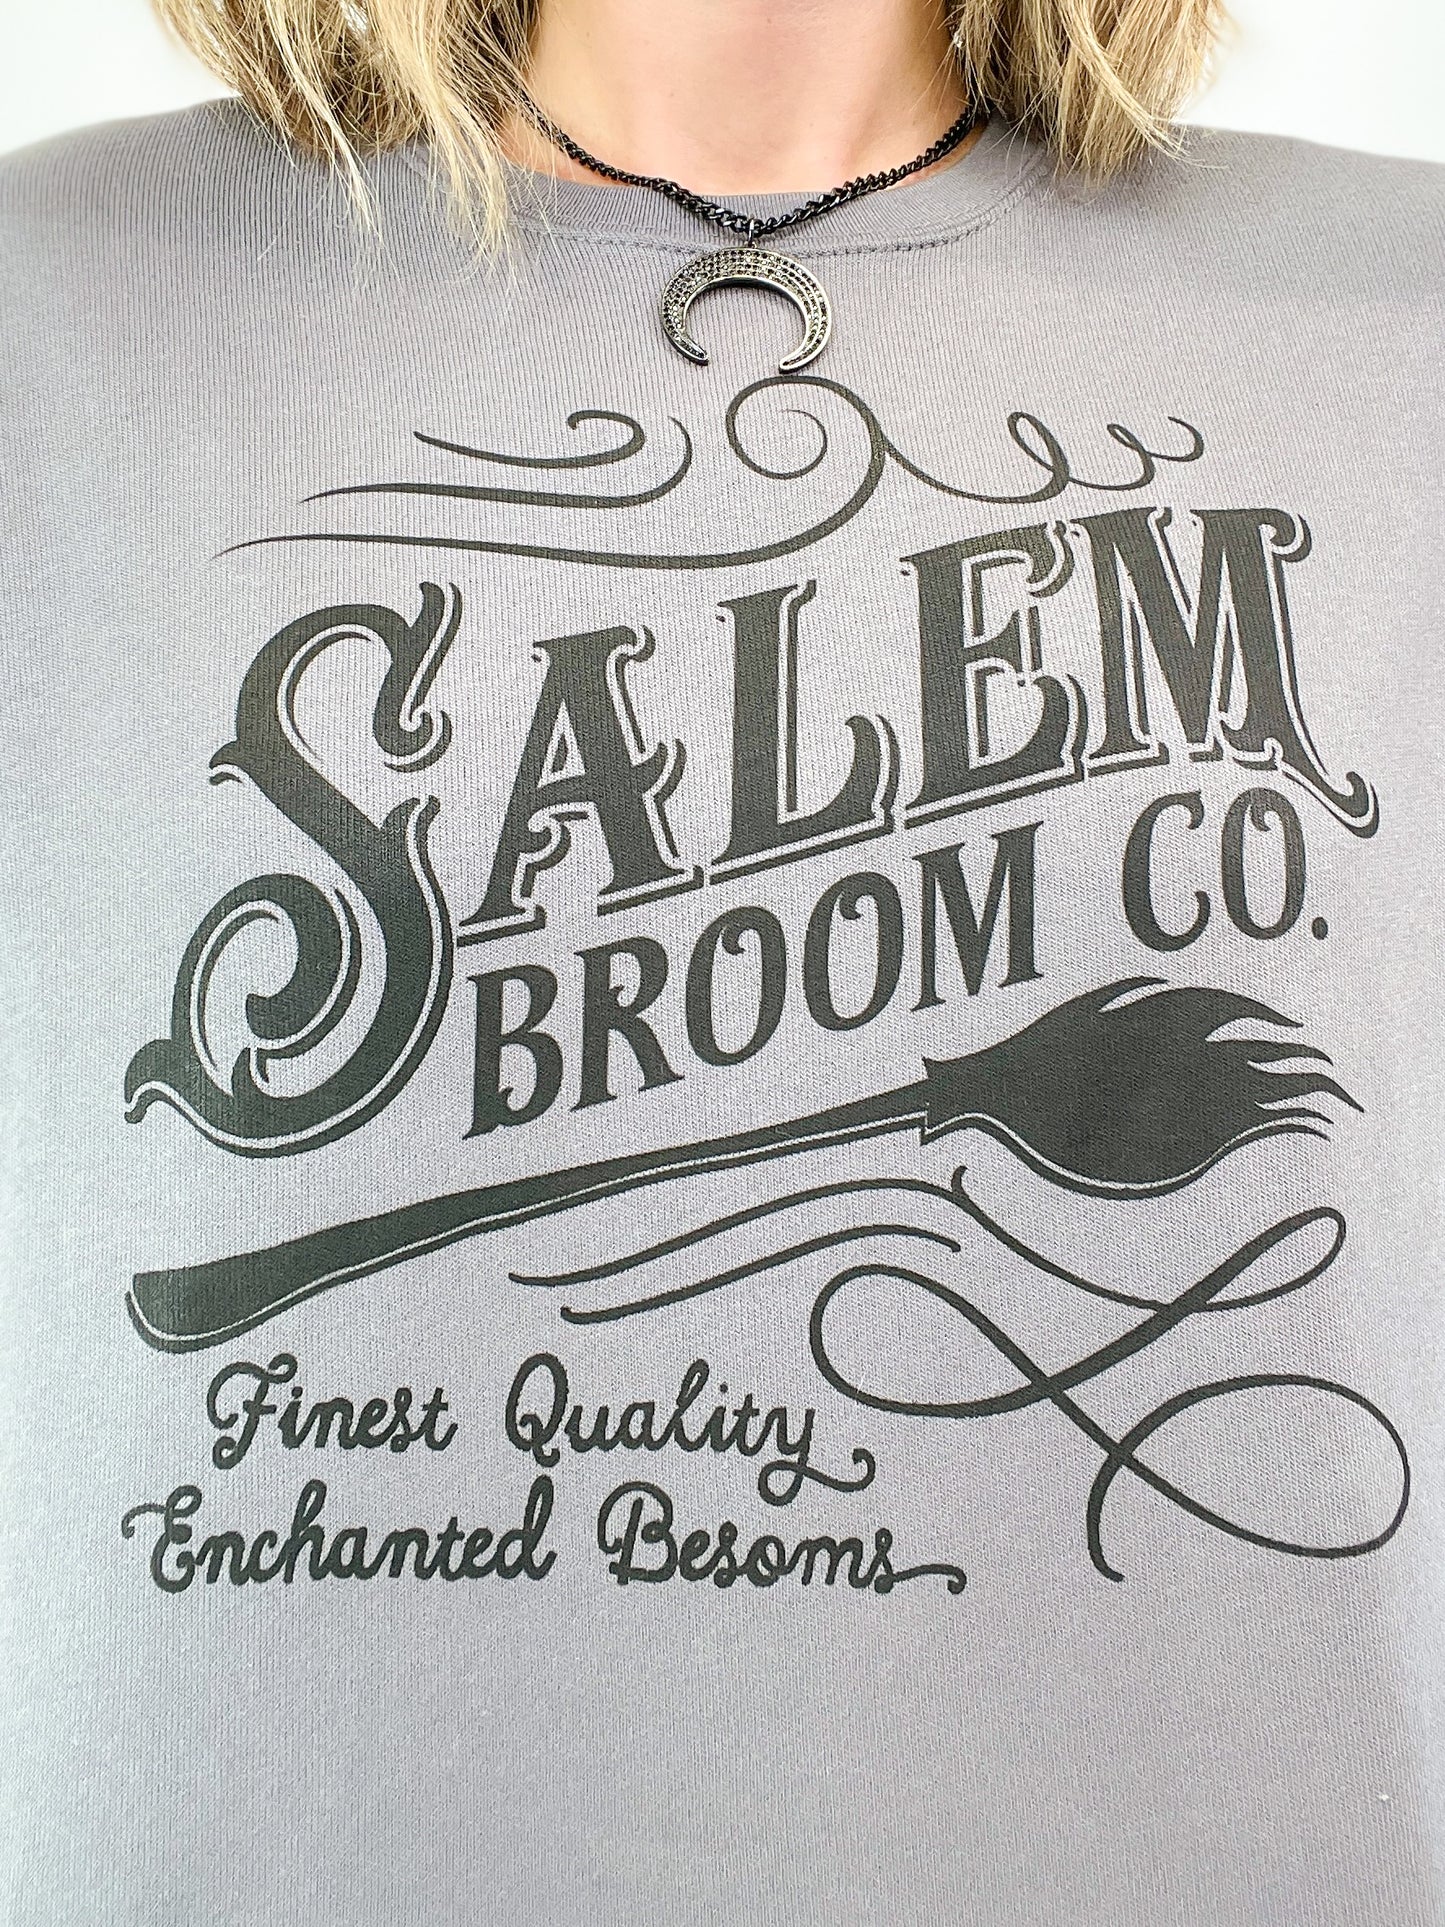 Salem Broom Co Sweatshirt Top